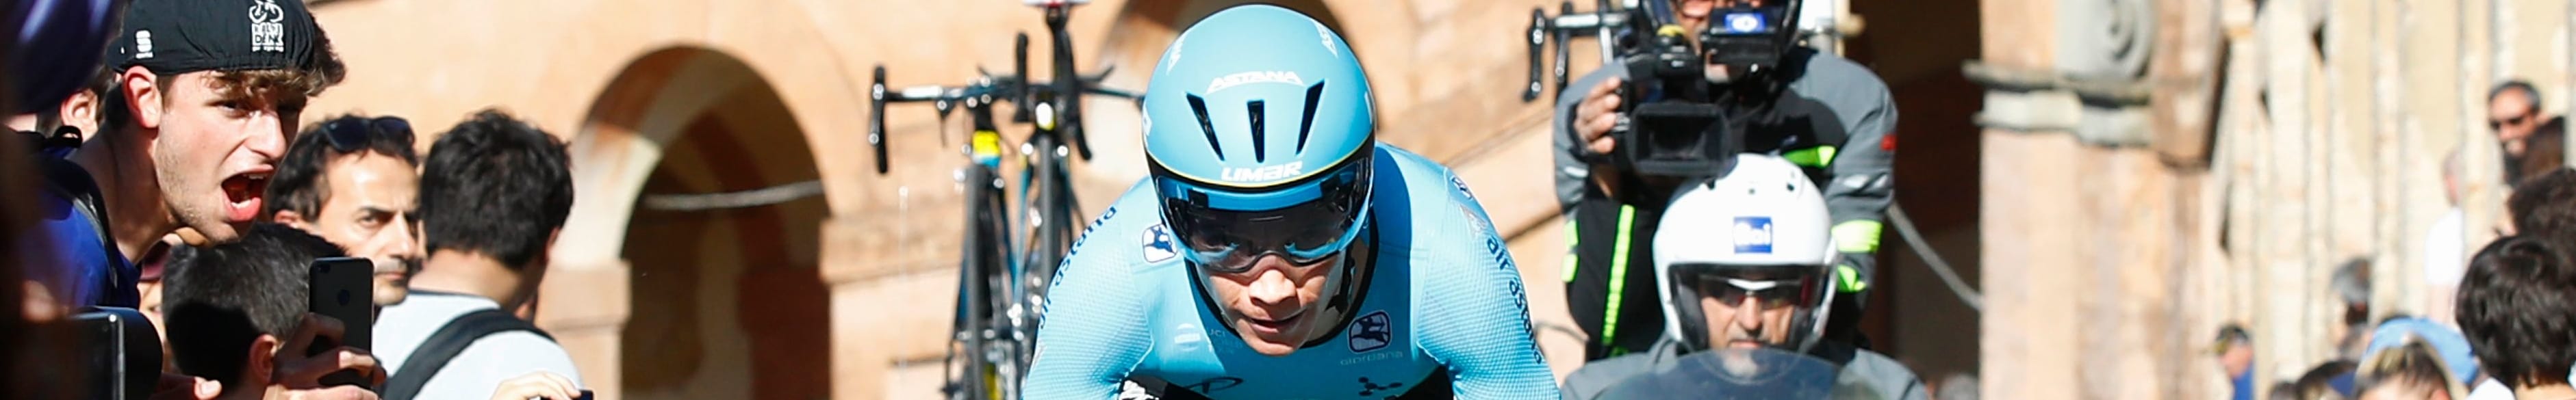 Vuelta 2019, tappa 9: Lopez Moreno vuole riprendersi la maglia rossa